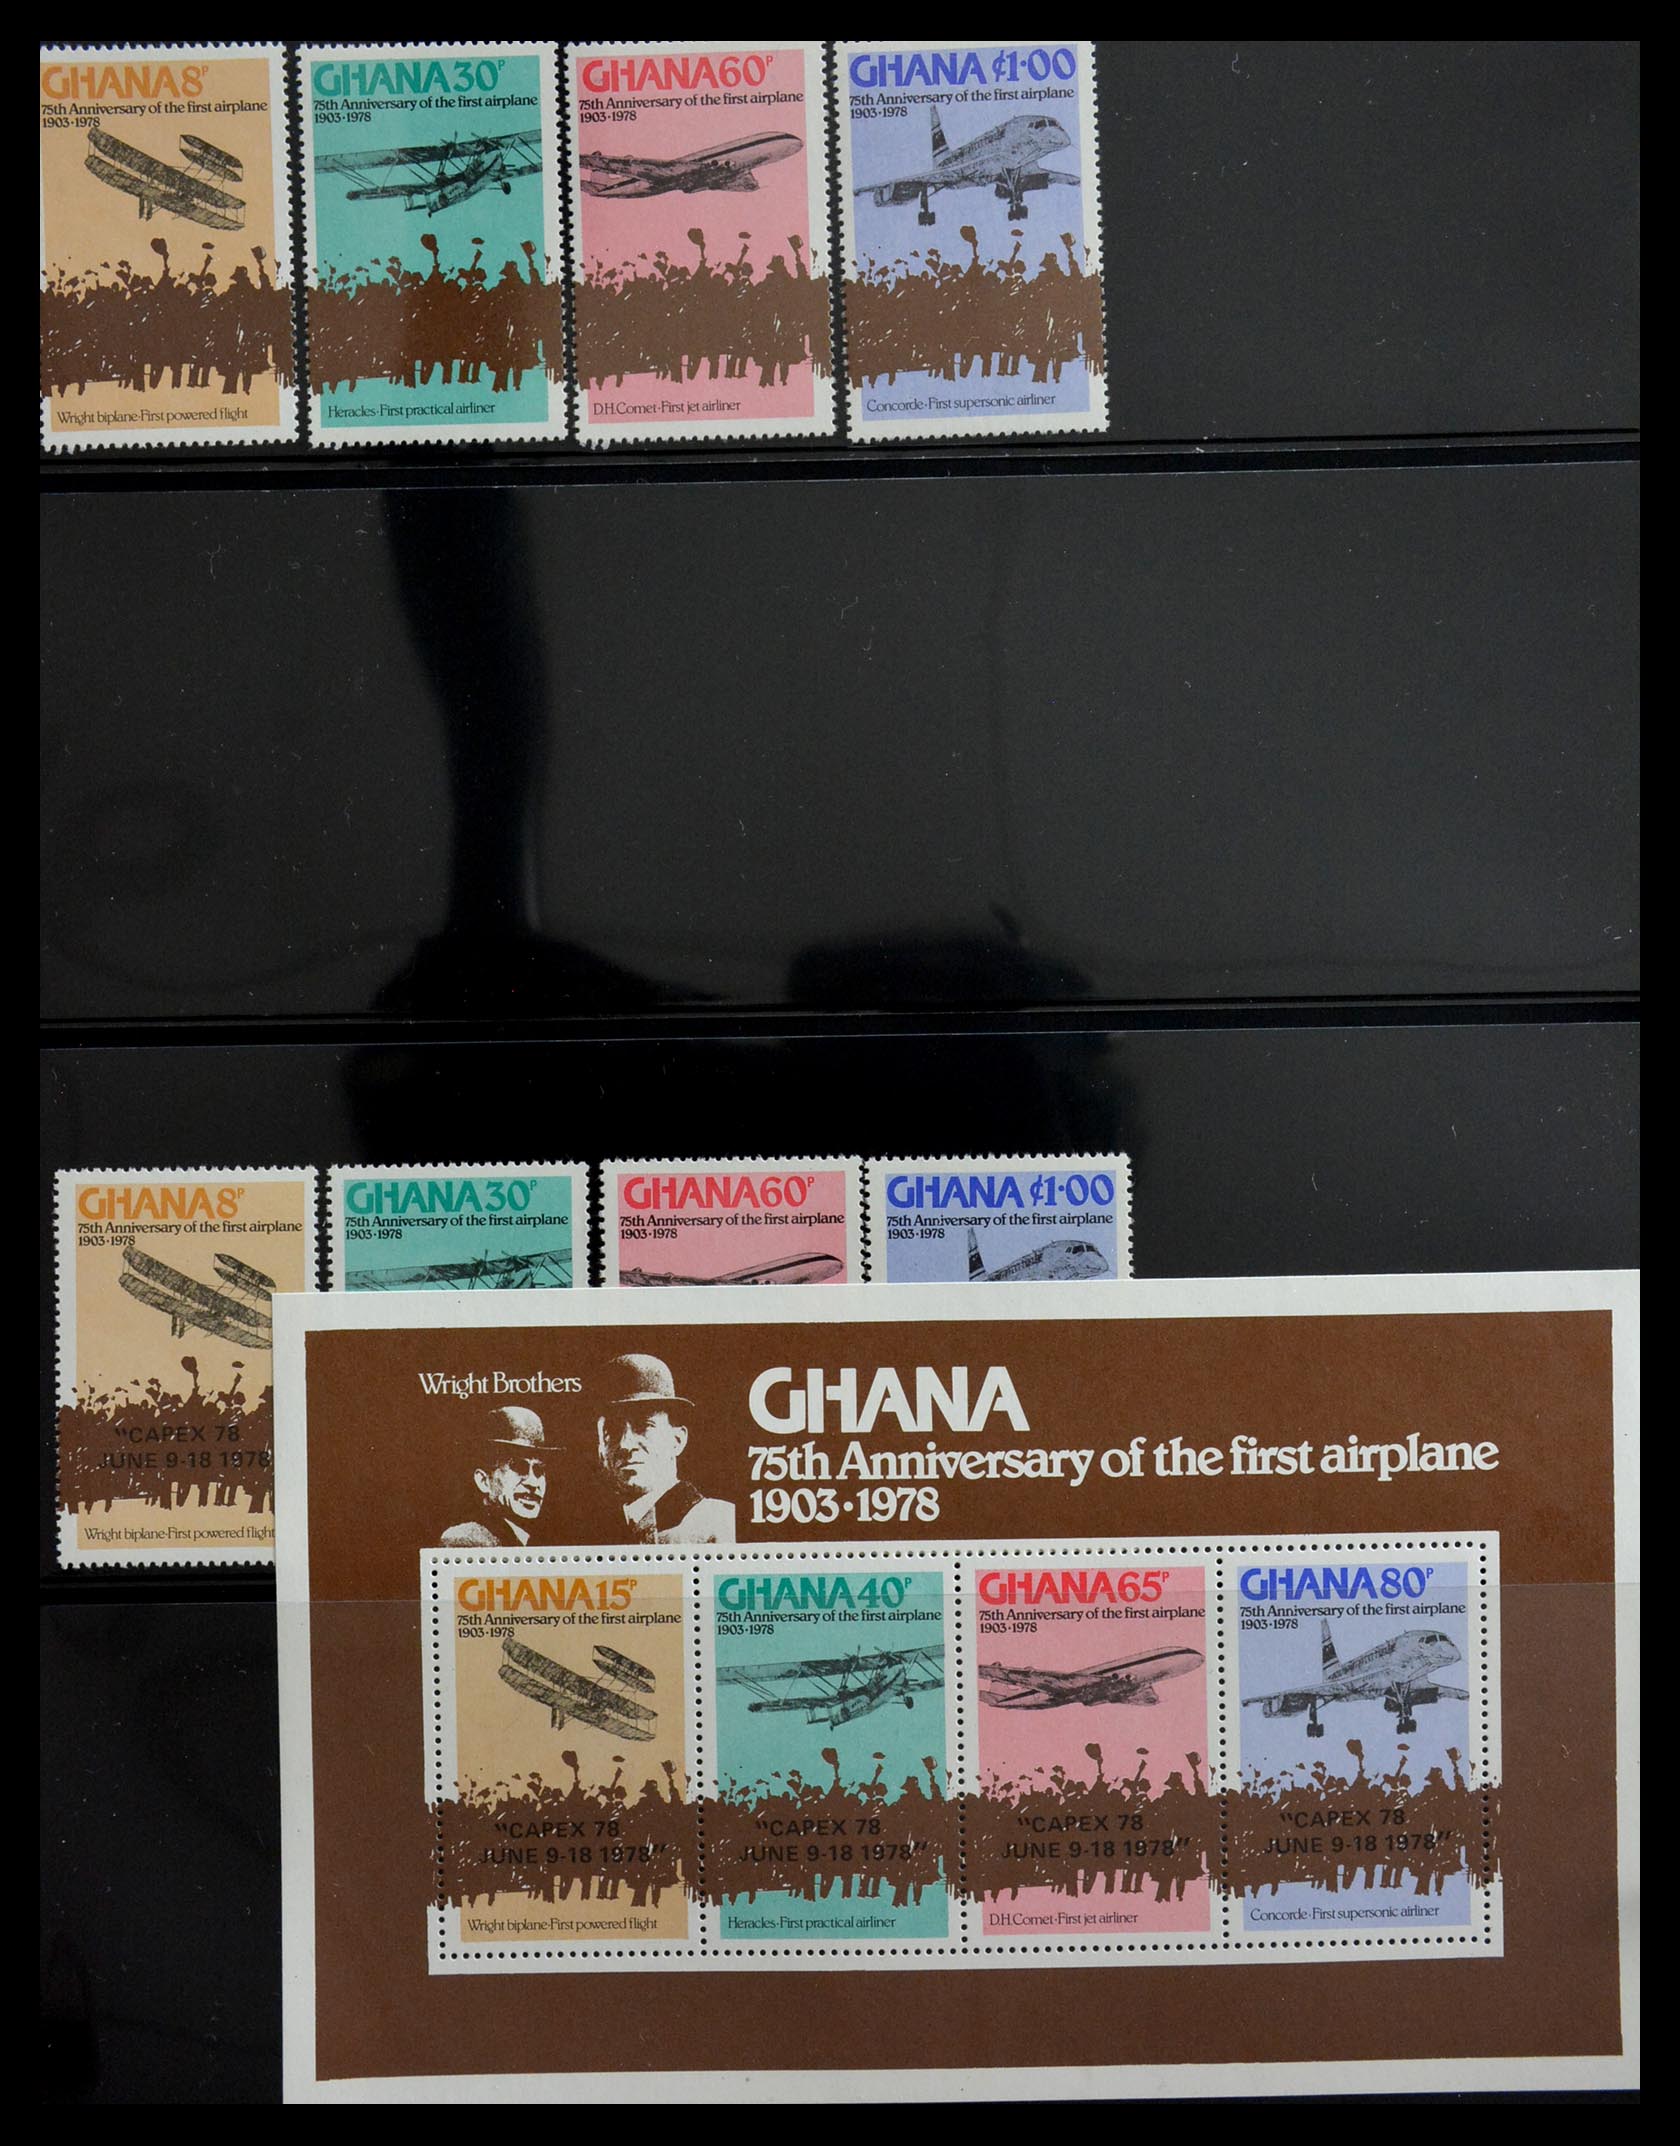 29166 085 - 29166 Gold Coast/Ghana 1876-1984.